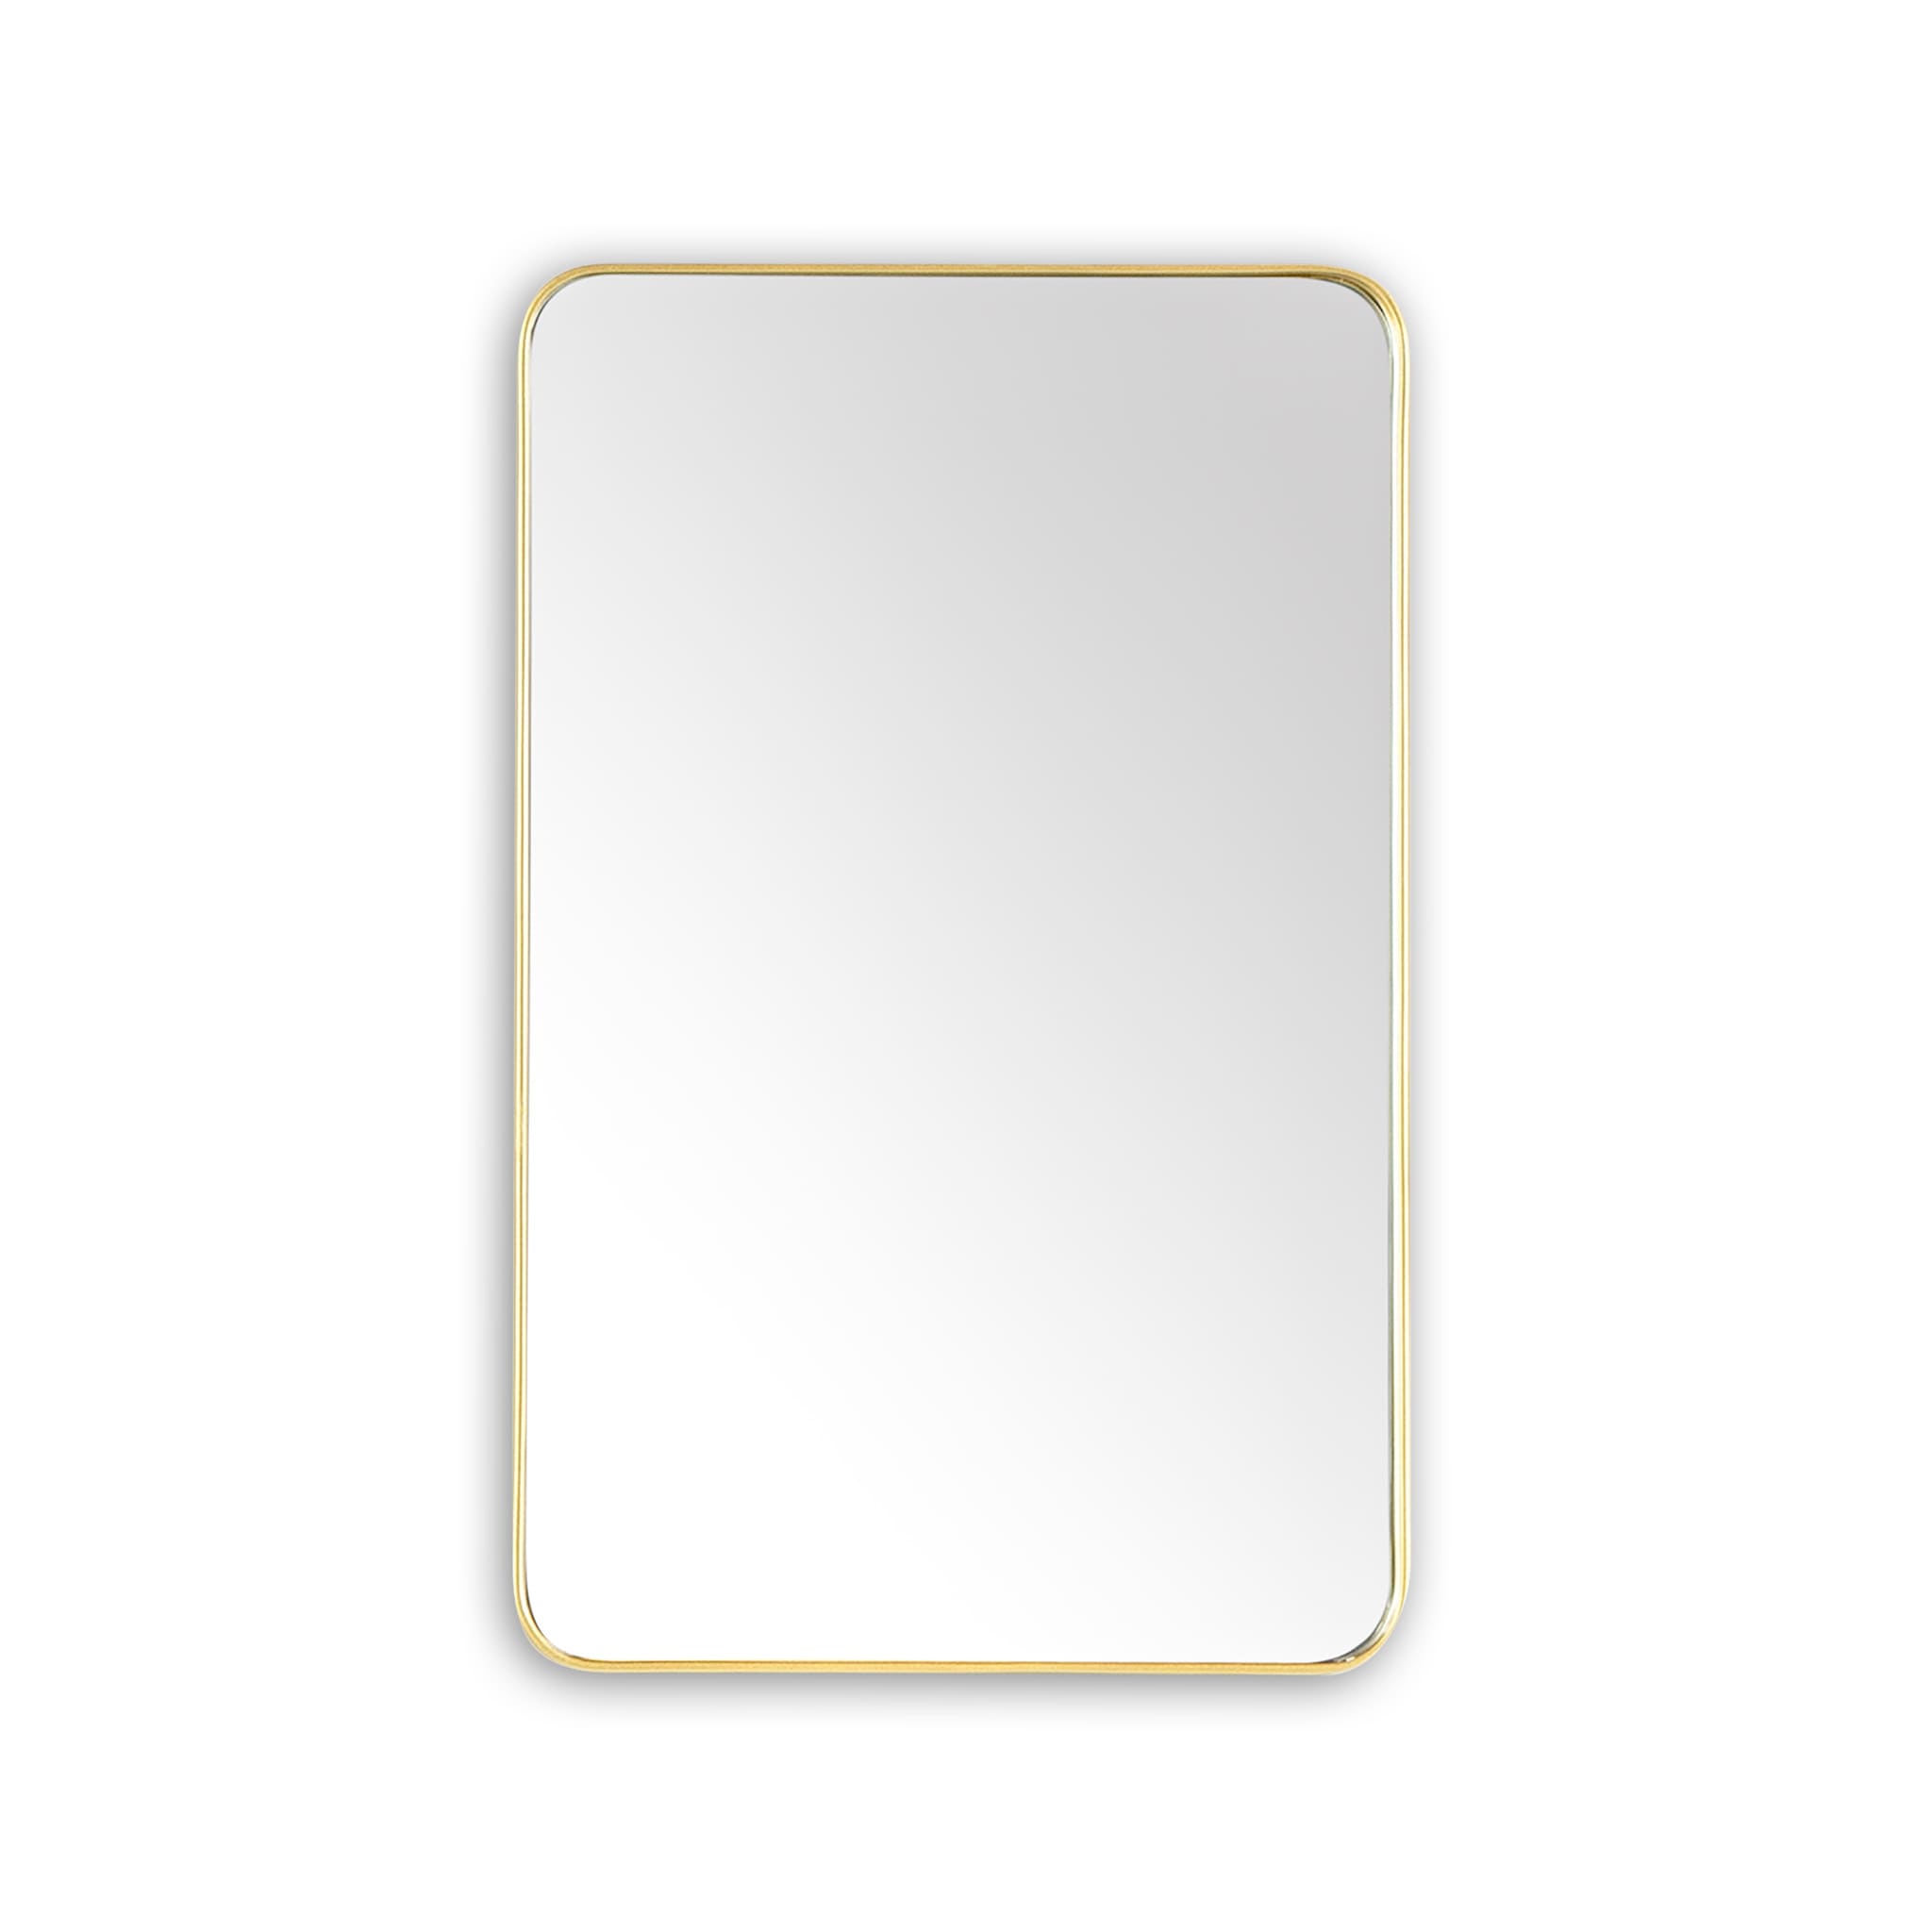  Bathroom Rectangular Mirror Homelero 20"  #size_20"  #color_gold